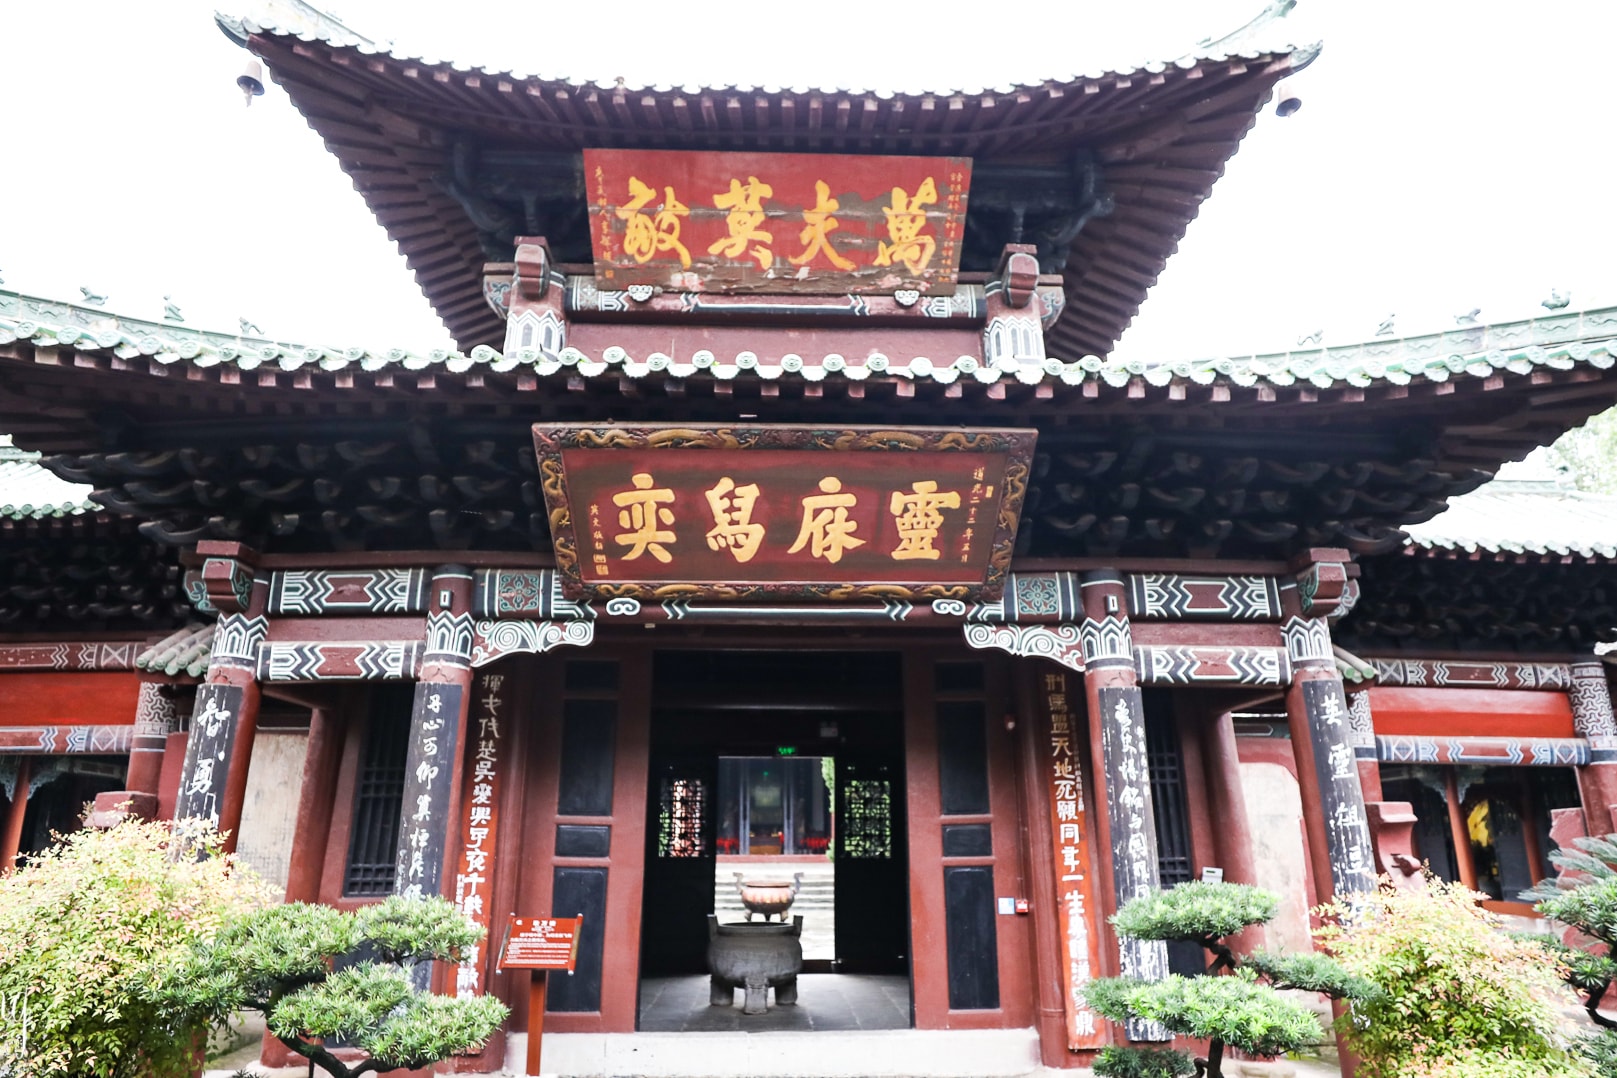 阆中古城有一座纪念张飞的祠庙叫“汉桓侯祠”，背后就是他的墓地